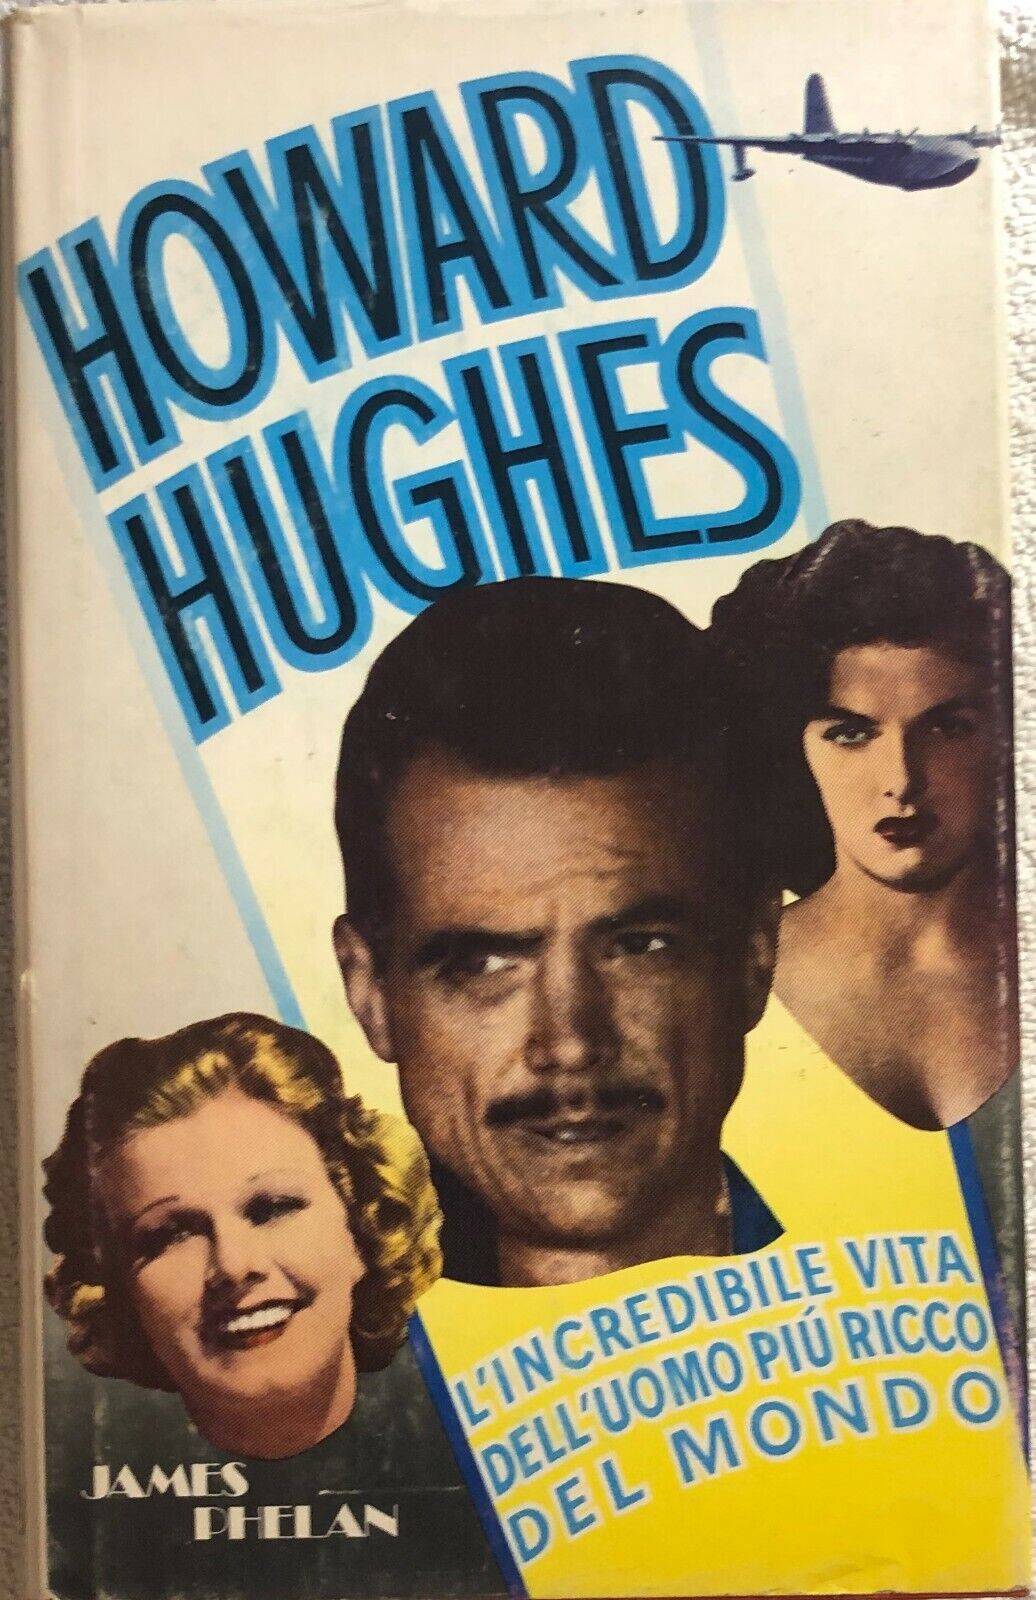 Howard Hughes: L'incredibile vita delL'uomo pi? ricco del mondo di James Phelan,